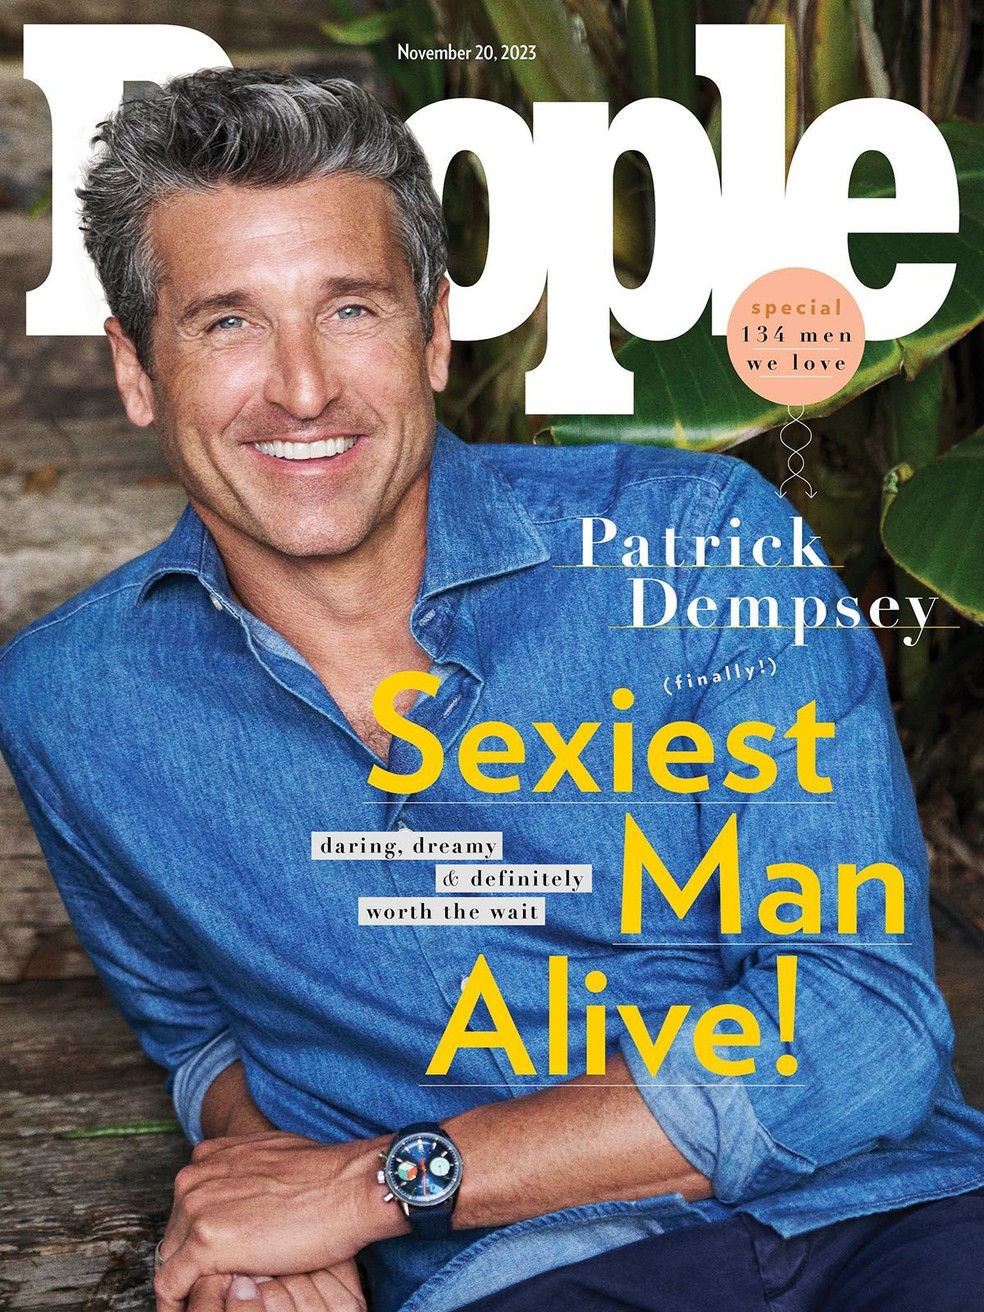 Aos 57 anos, Patrick Dempsey é eleito o homem mais sexy do mundo pela